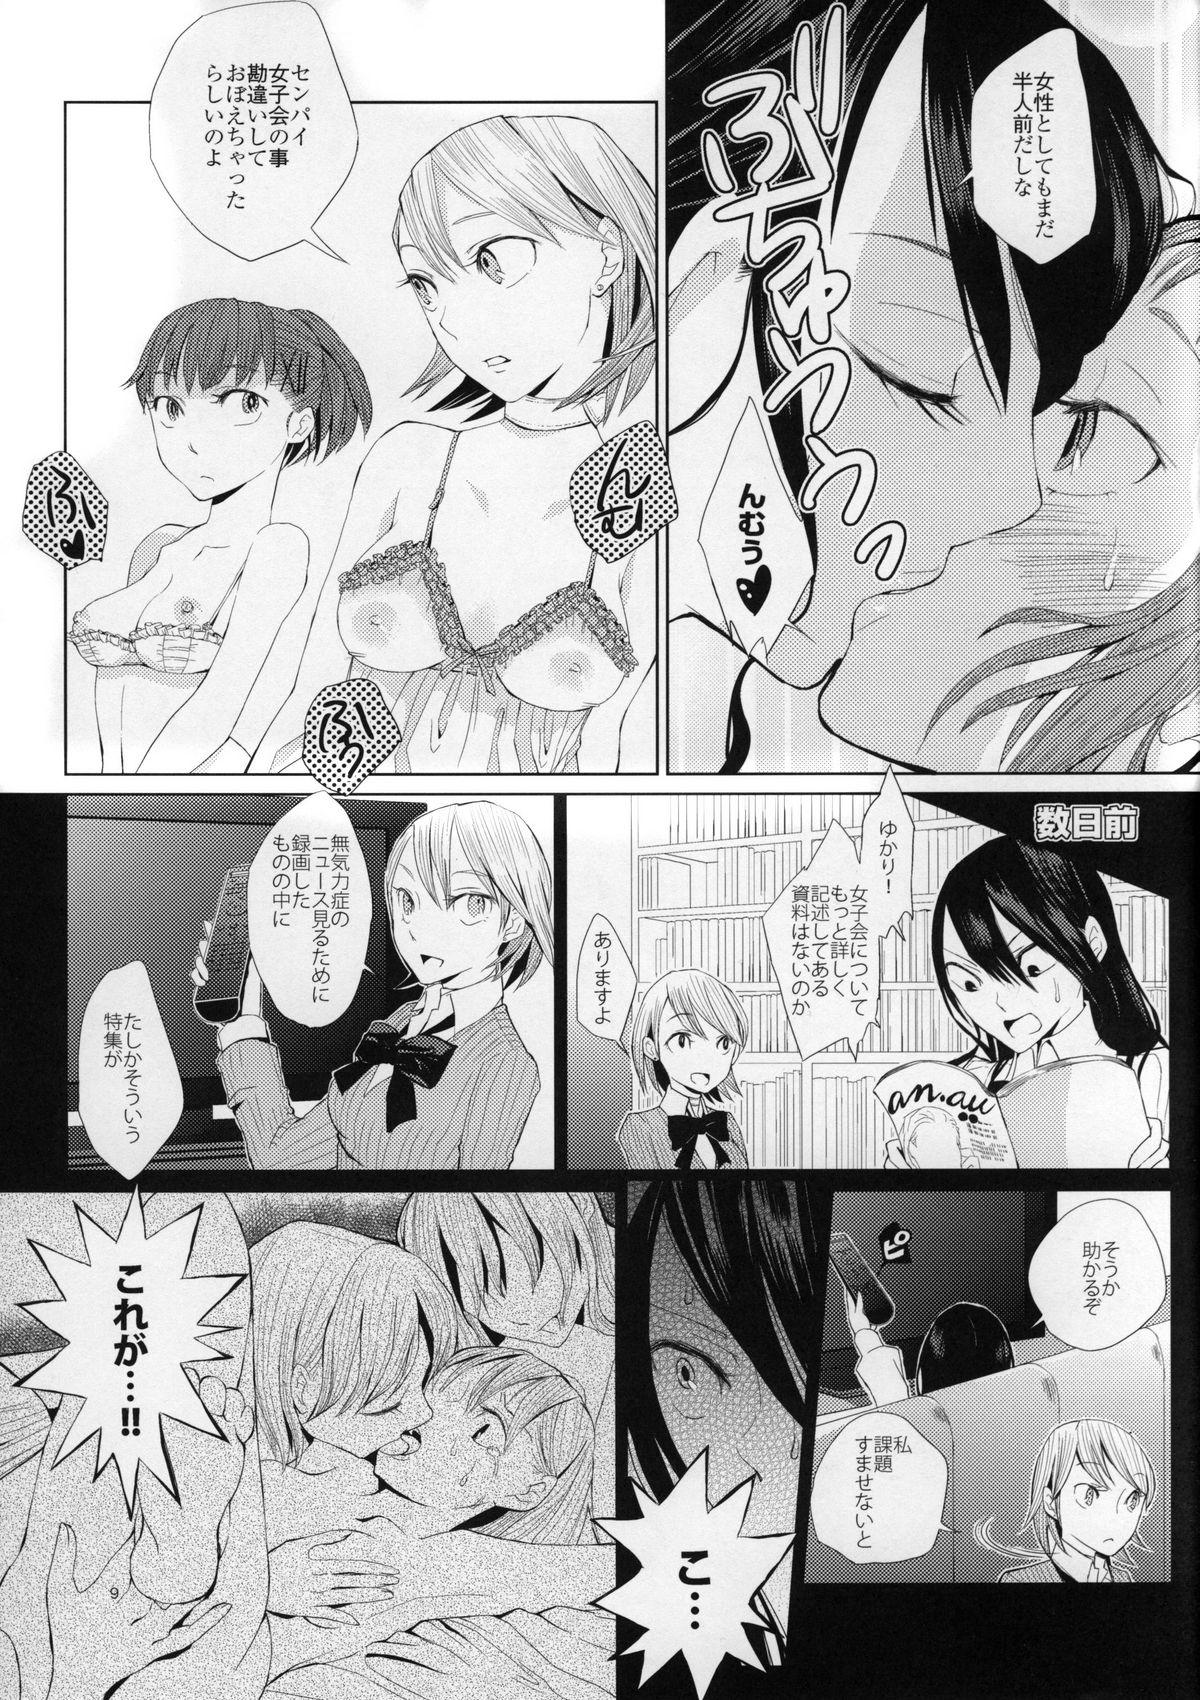 Pain YURI SONA 2 Yoru no Joou - Midnight Queen - Persona 3 3way - Page 8